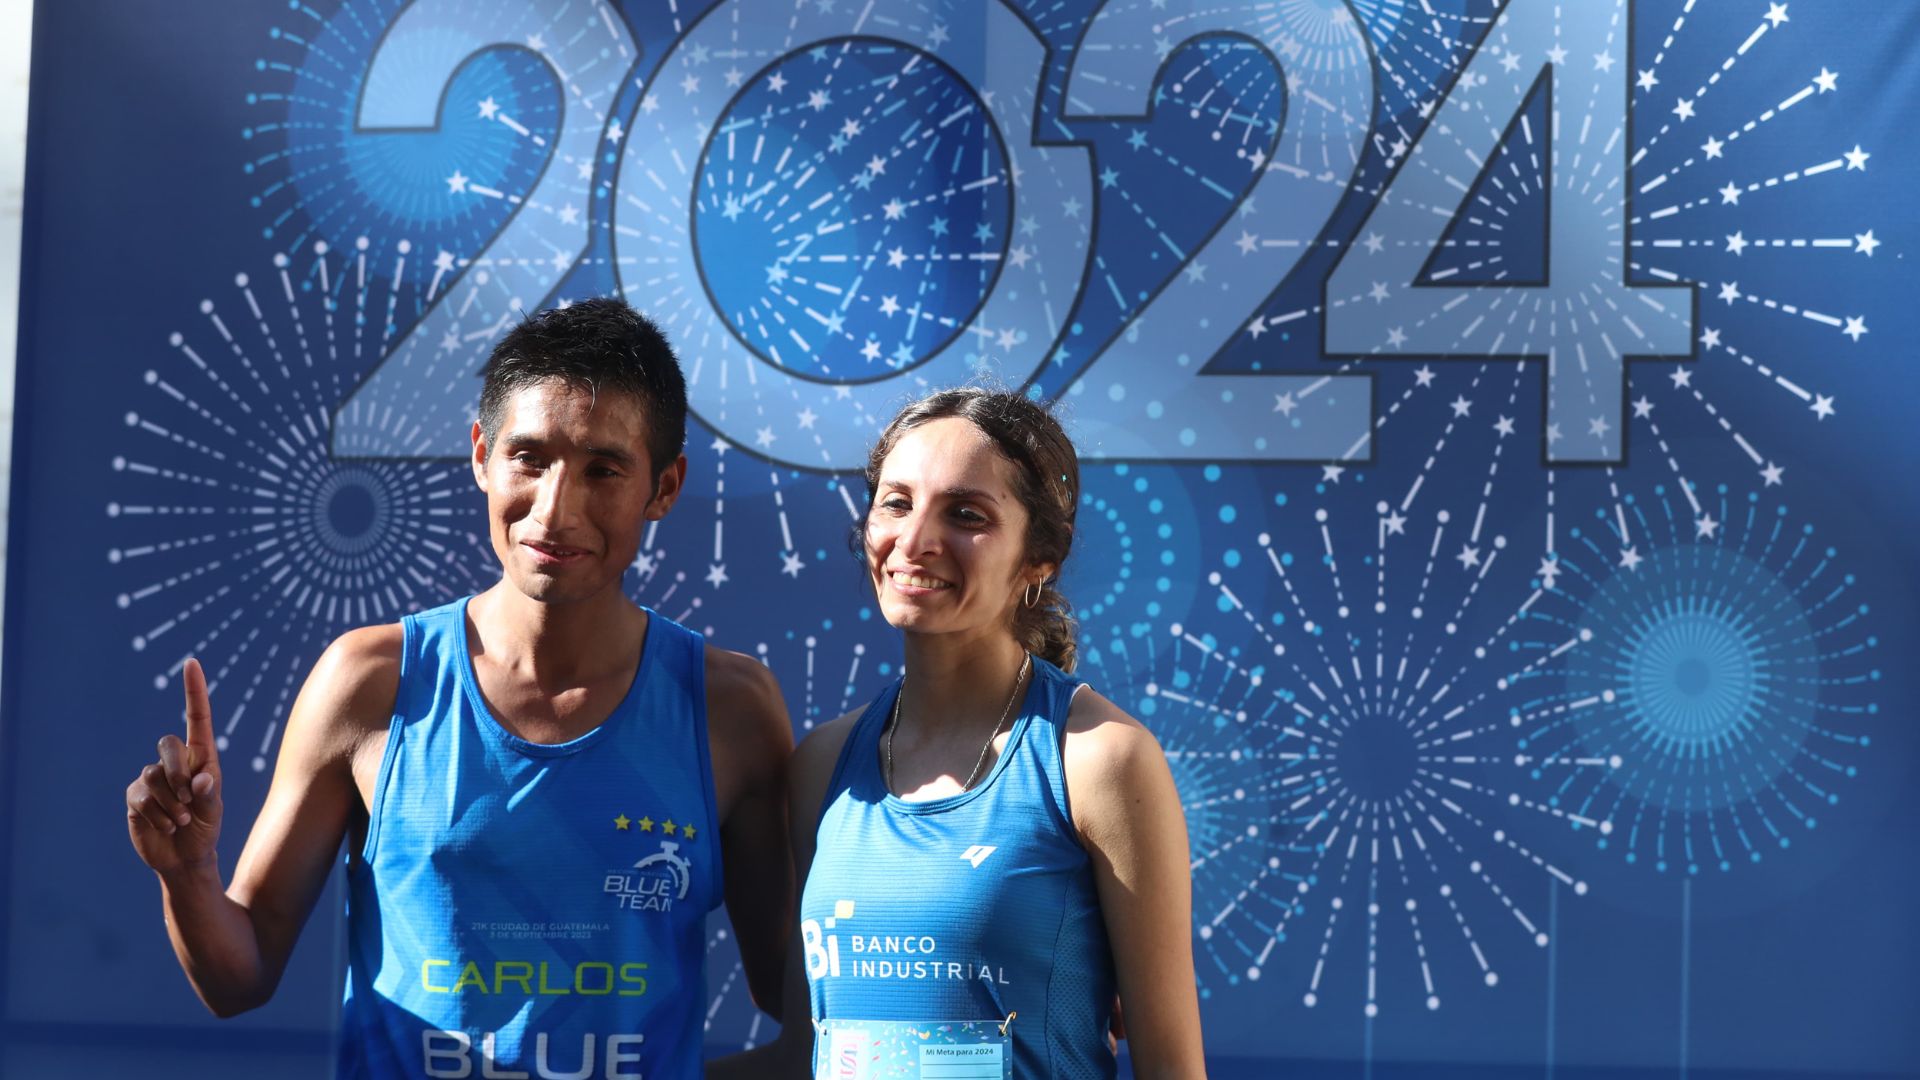 José Carlos Gonzáles y Viviana Aroche en la última carrera del año, luego de ser campeones en sus categorías. (Foto Prensa Libre: Esbin González)